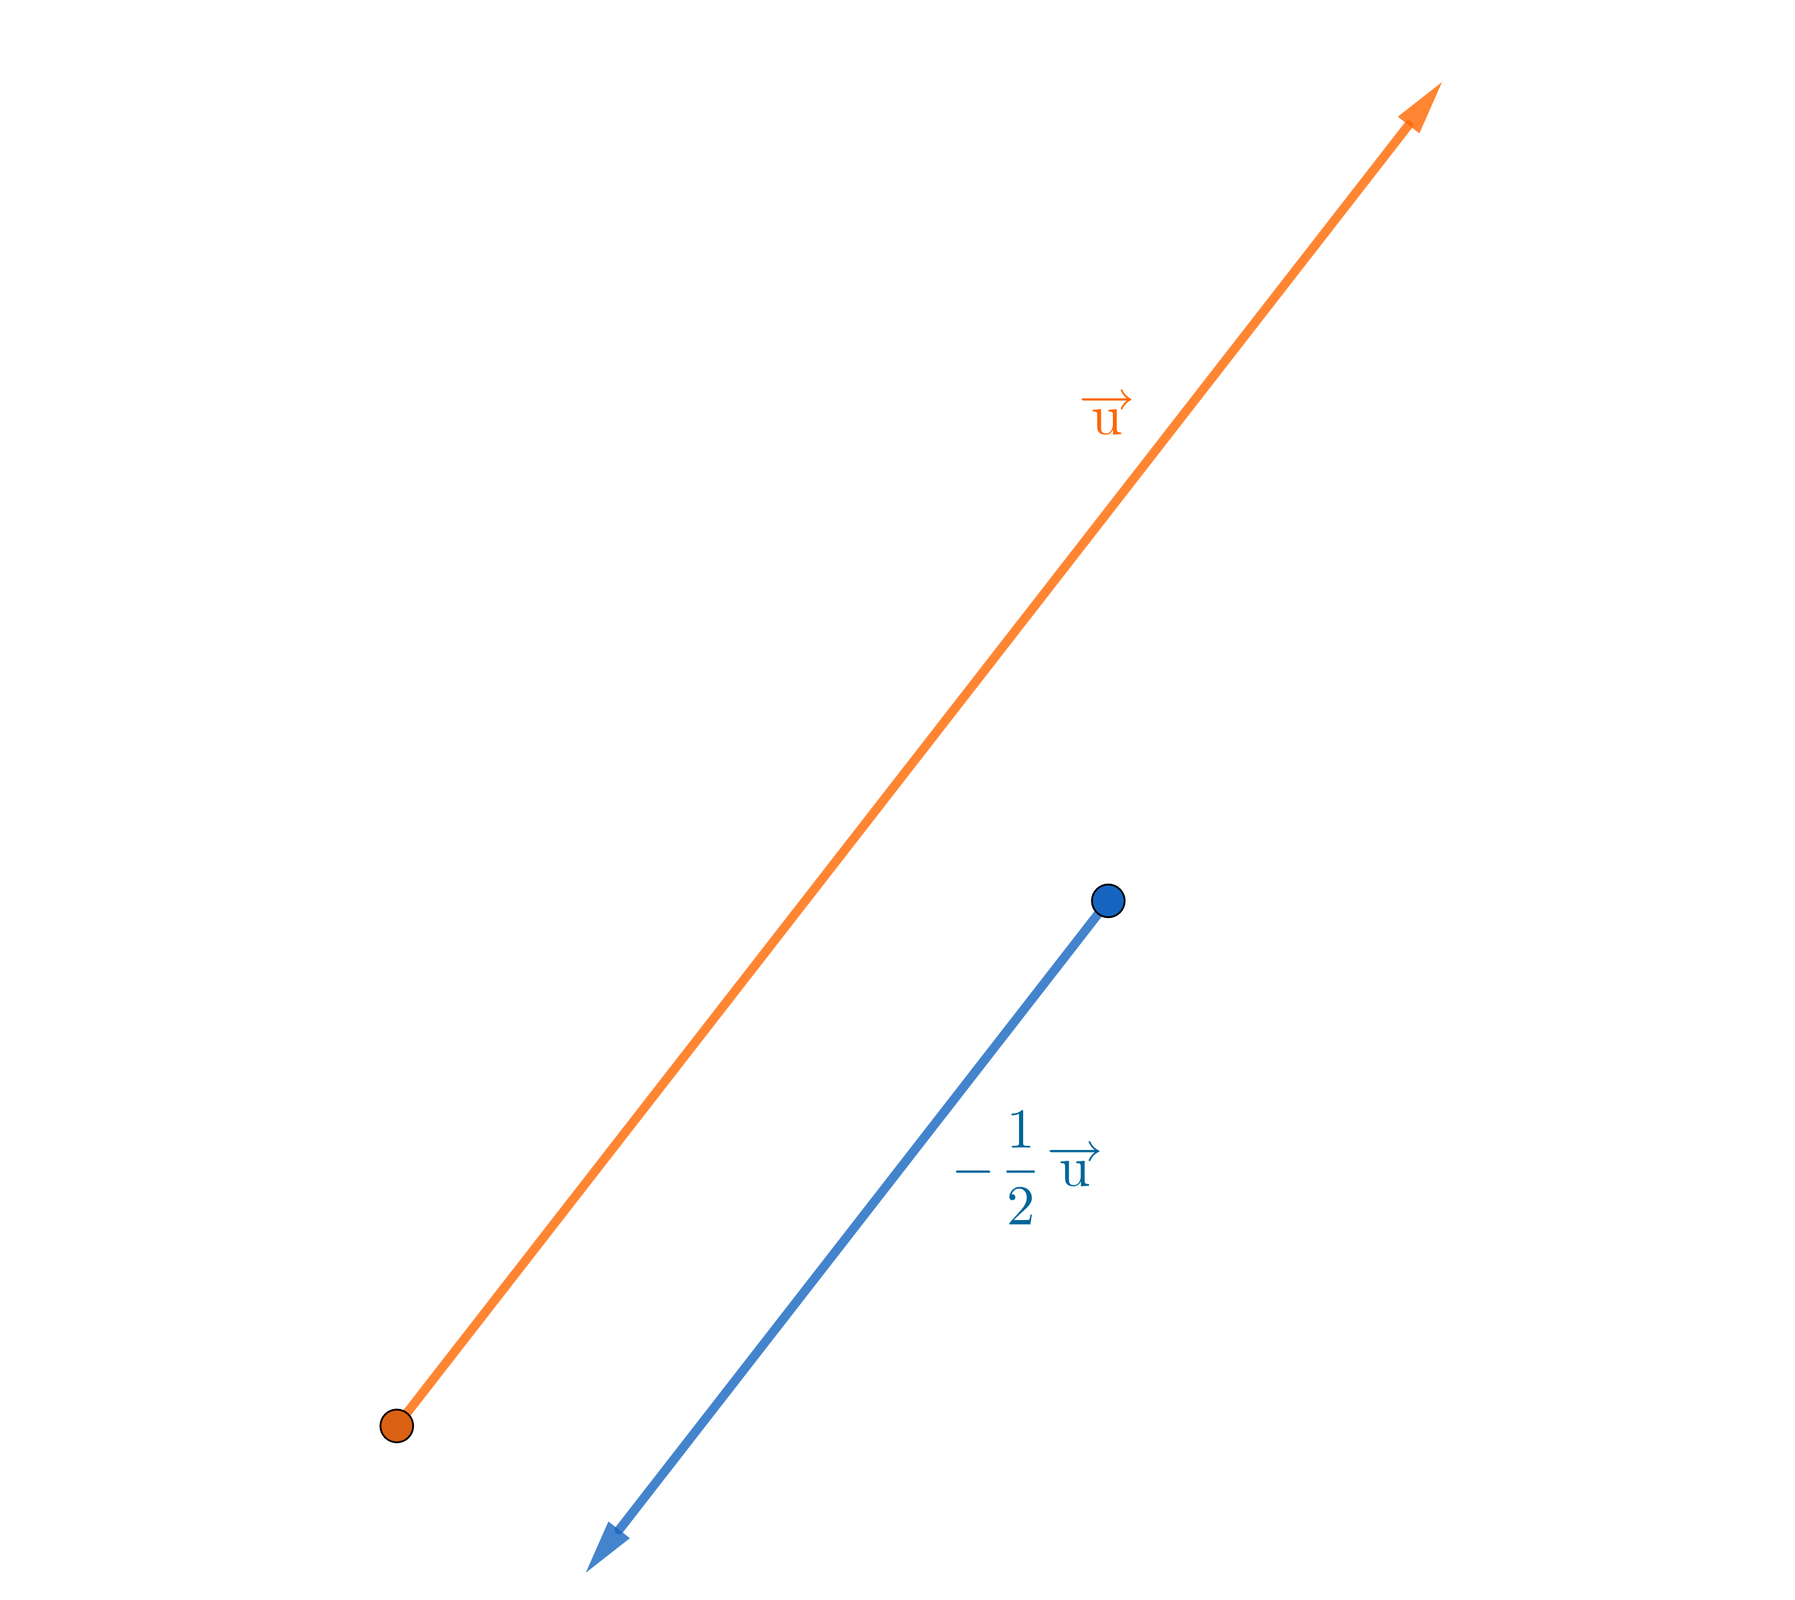 Na ilustracji znajdują się dwa wektory. Pierwszy długi wektor pokazuje w górę na skos, oznaczony jest on jako wektor U. Po jego prawej stronie znajduje się mniejszy wektor pokazujący na skos w dół, oznaczony jest on jako minus jeden dzielone na dwa wektor U. 